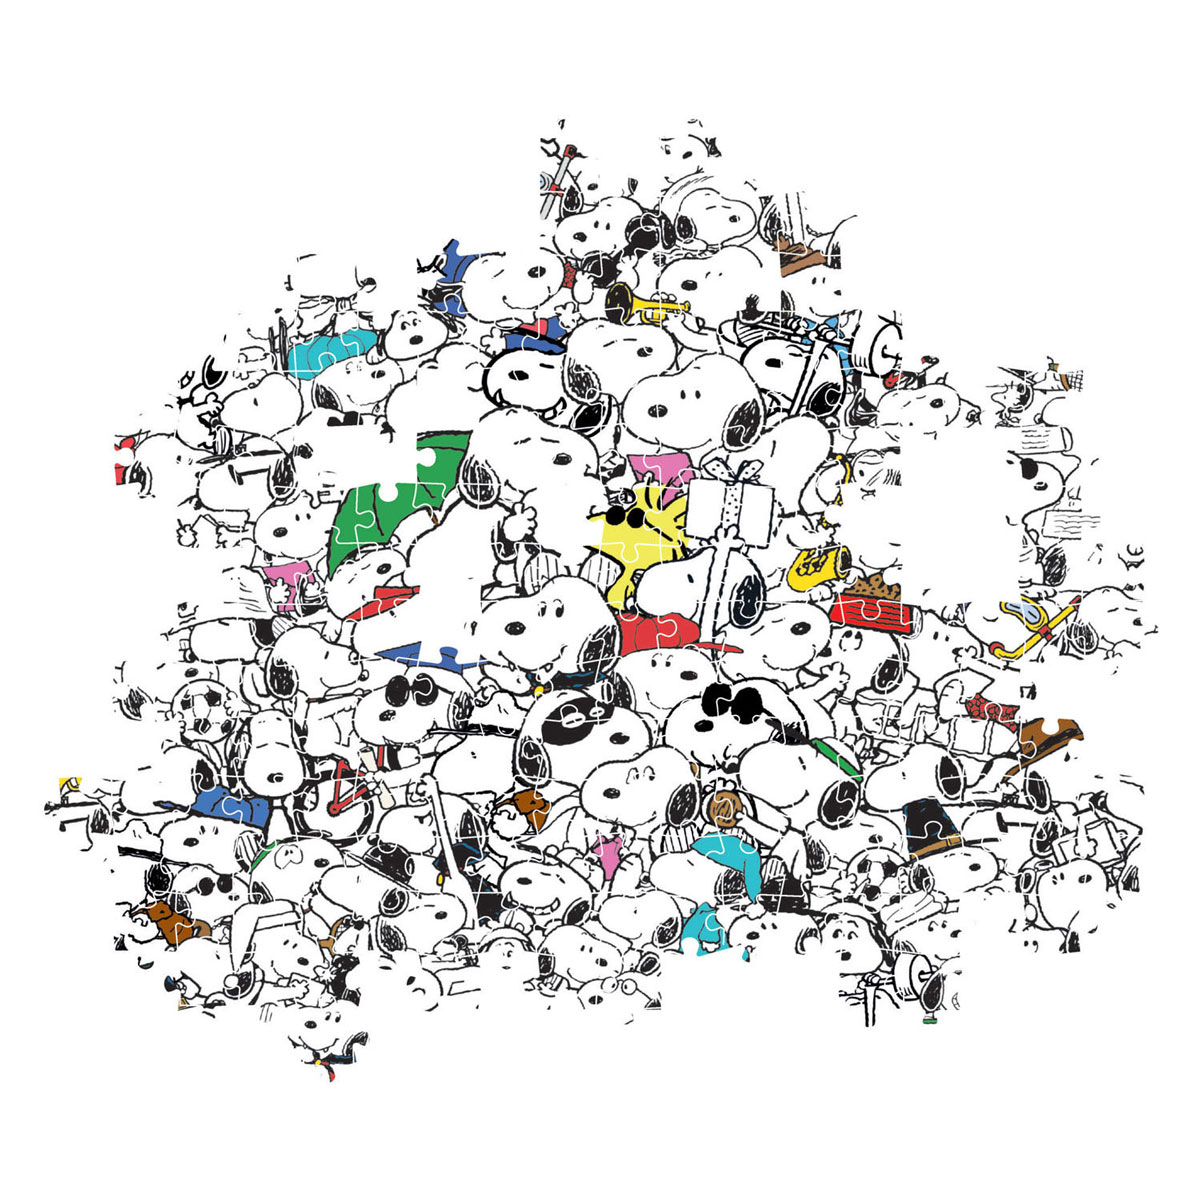 Clementoni Emoji Impossible Puzzle 1000 Pieces Multicolor